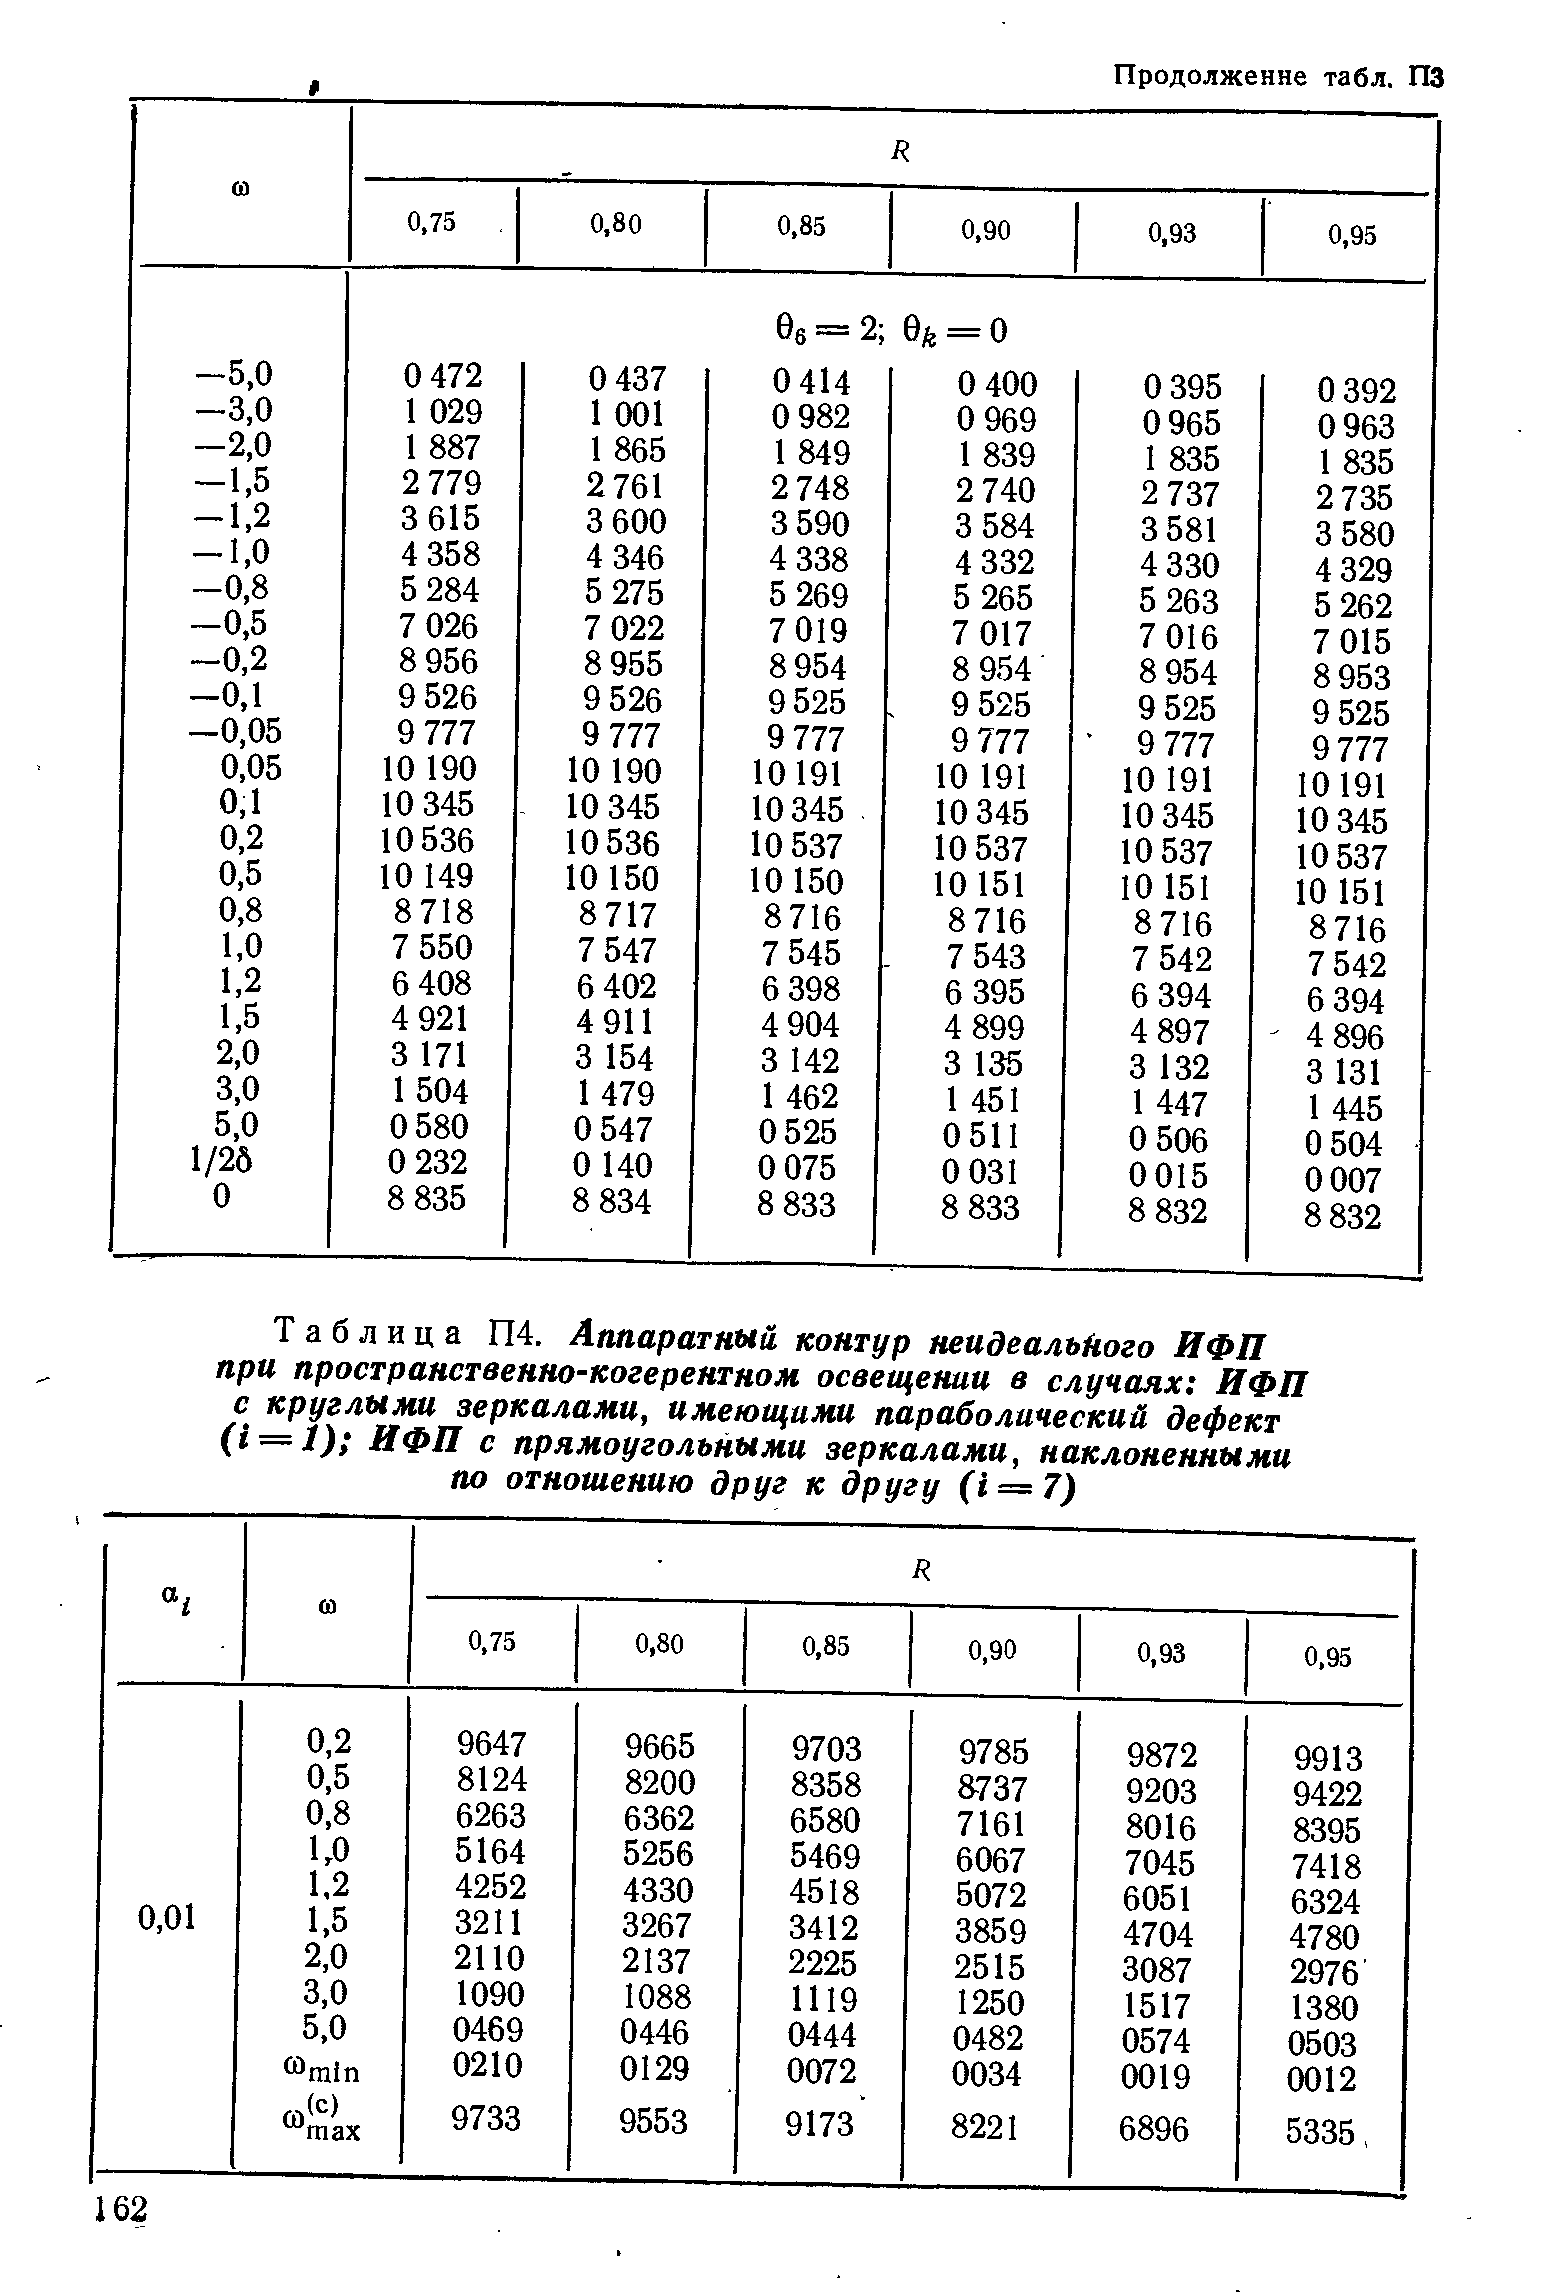 Таблица П4. Аппаратный контур неидеальЛого ИФП при <a href="/info/10179">пространственно-когерентном</a> освещении в случаях ИФП с круглыми зеркалами, имеющими параболический дефект (i = l) ИФП с прямоугольными зеркалами, наклоненными по отношению друг к другу (i = 7)
